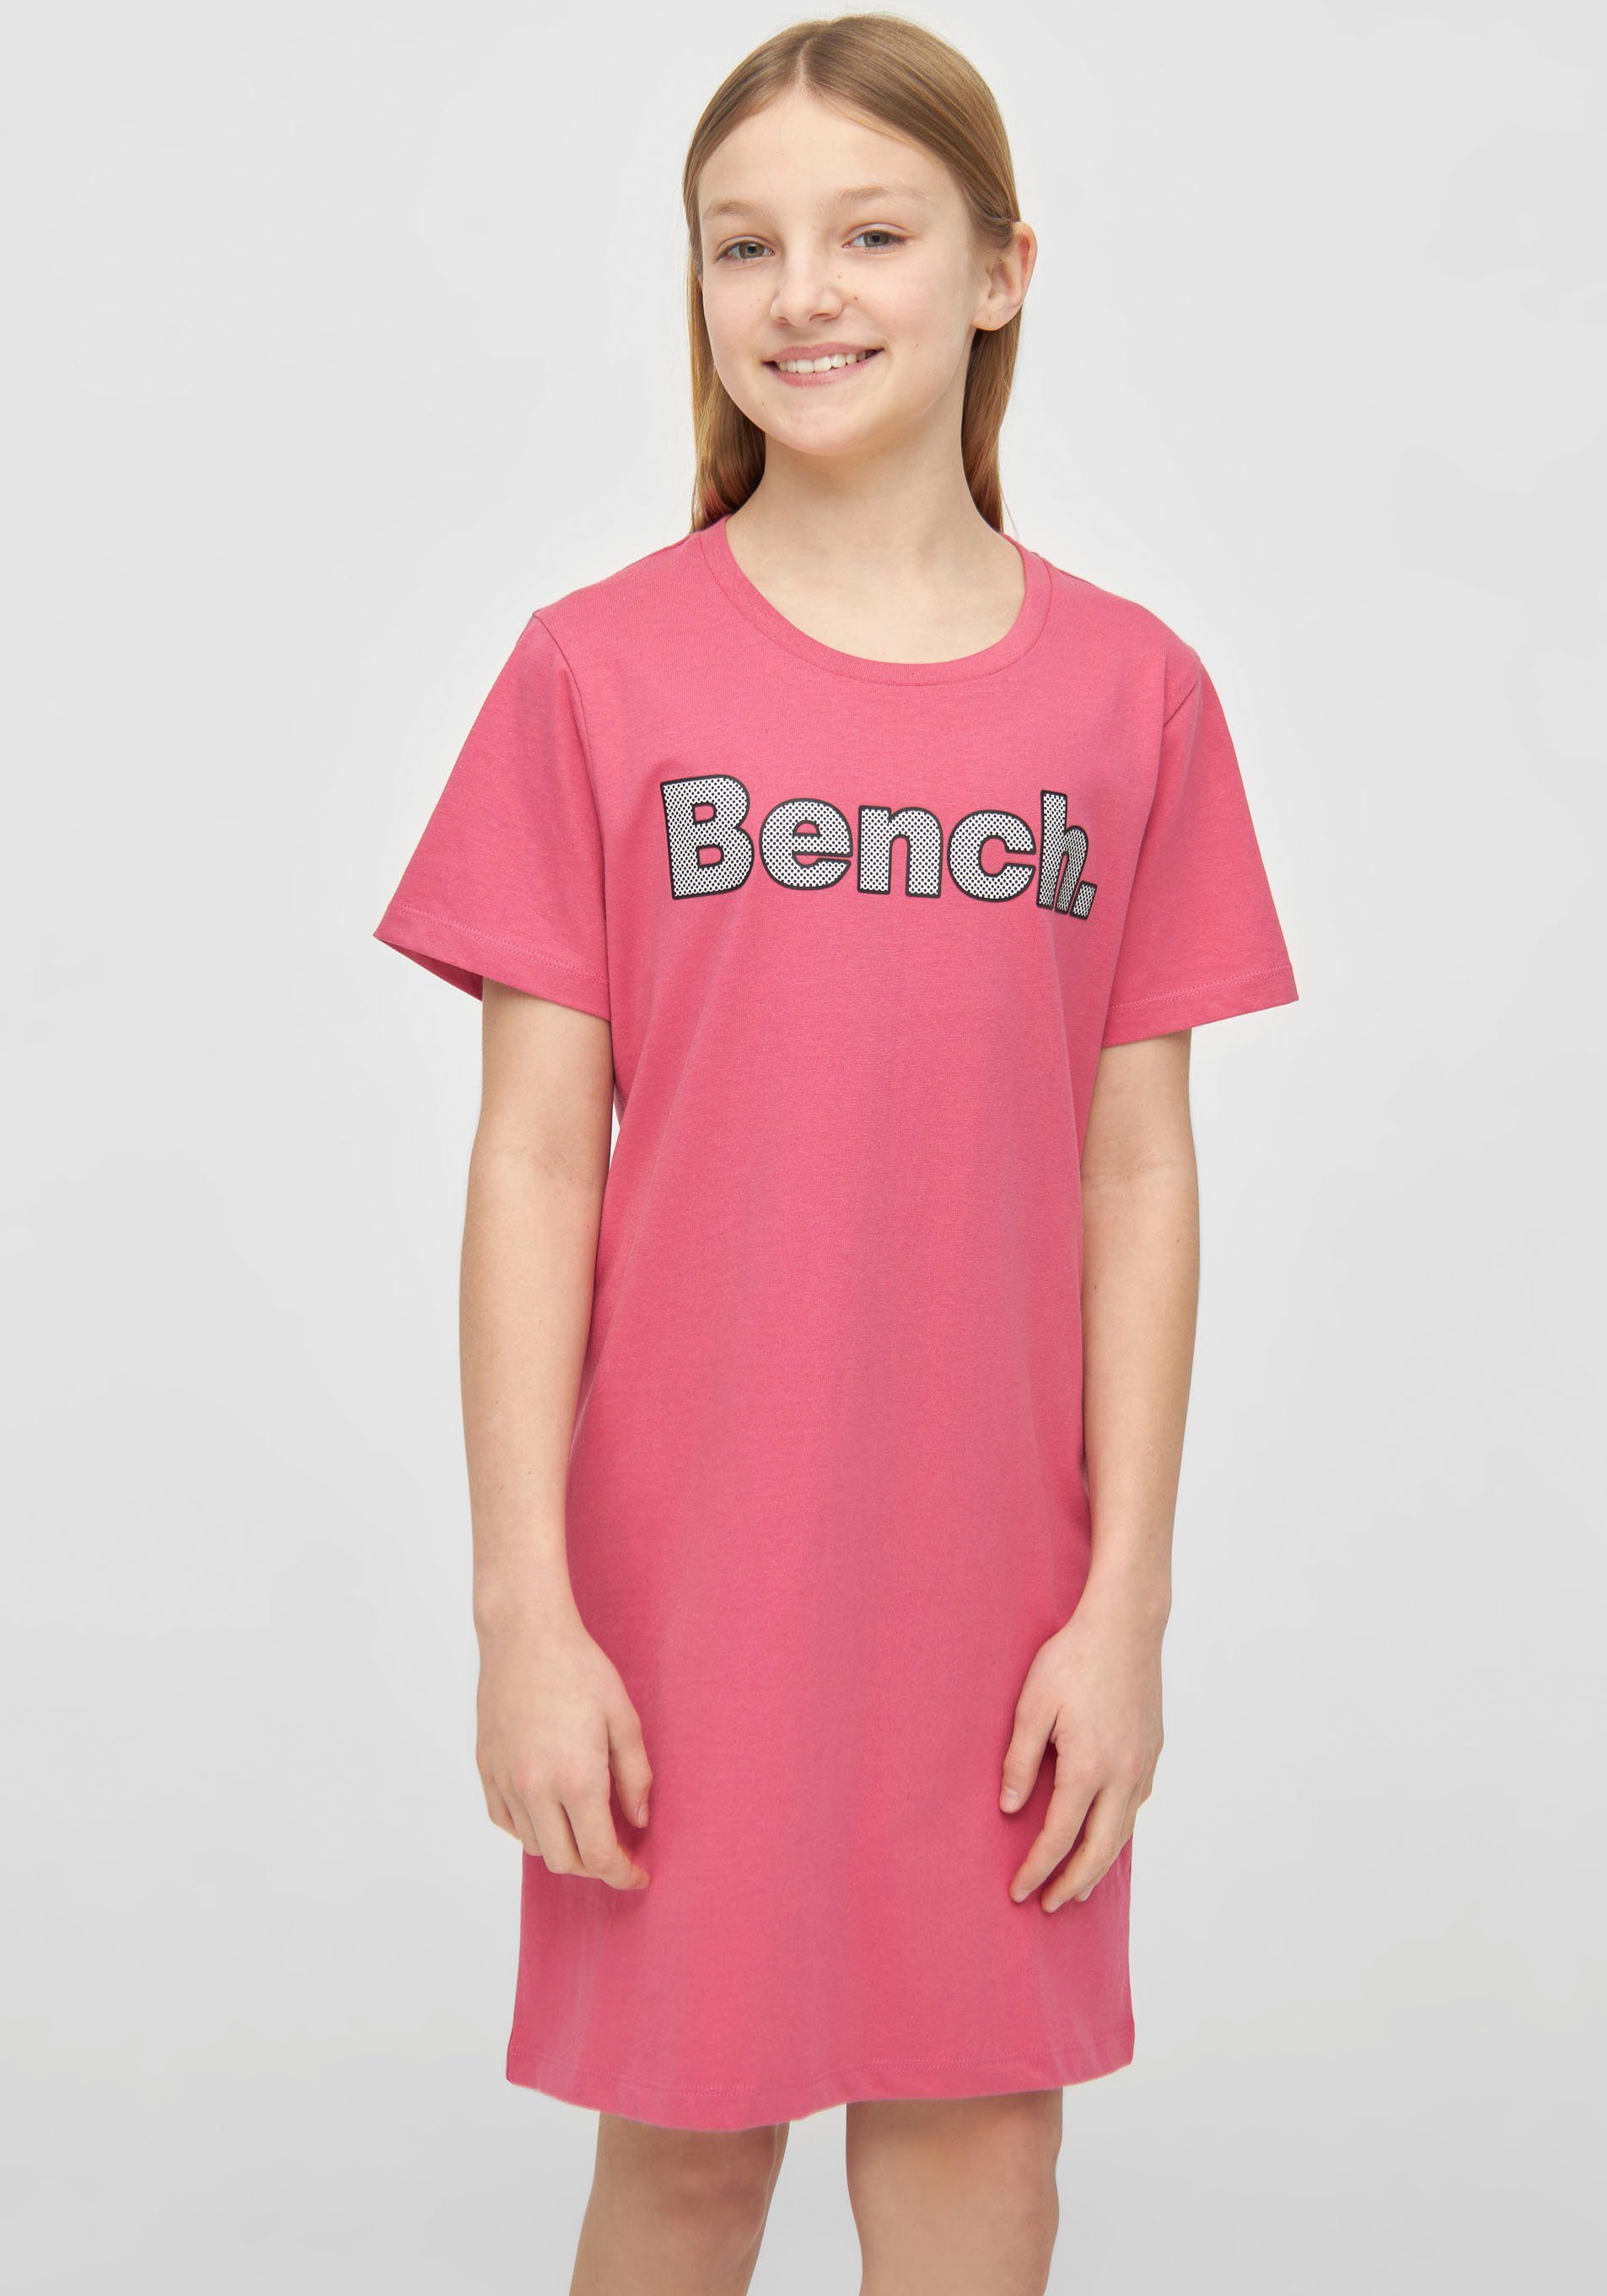 Bench Mädchen T-Shirts online kaufen | OTTO | T-Shirts